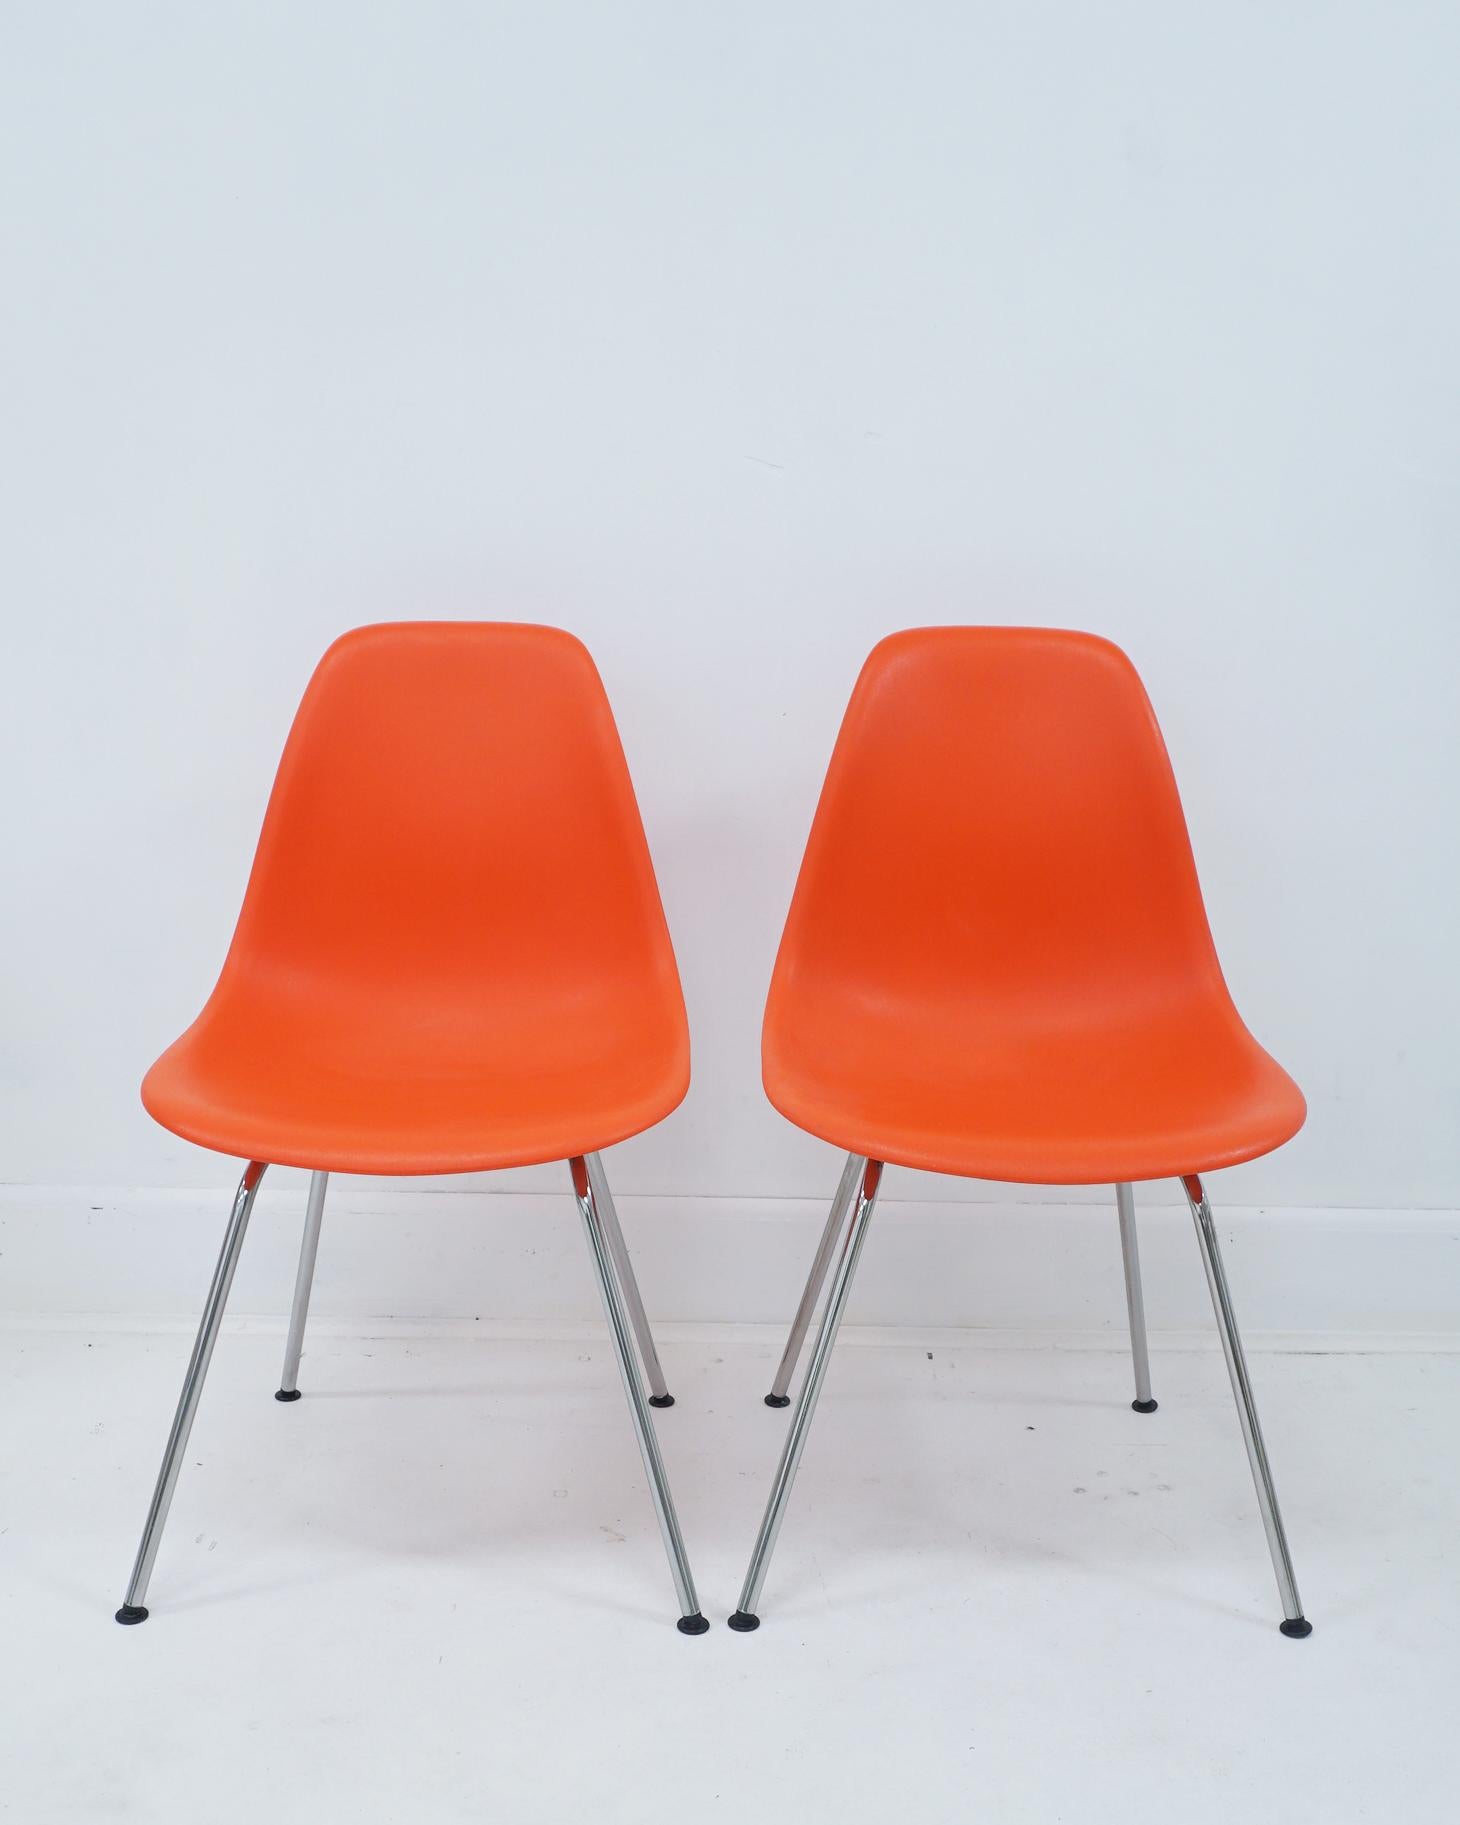 Postmoderne Chaise d'appoint Eames contemporaine en plastique moulé orange rouge en vente